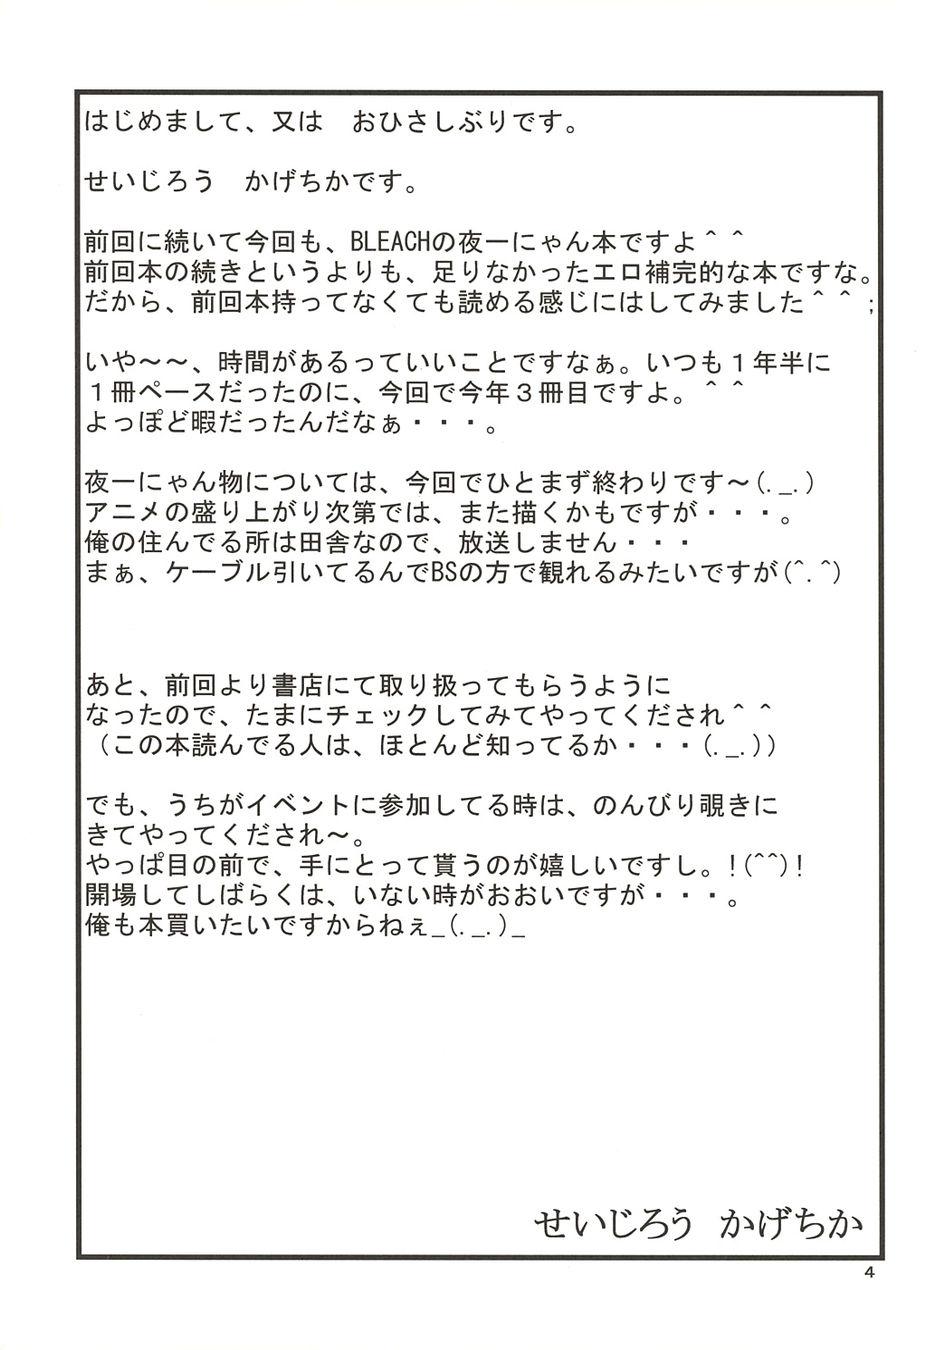 Oral Yoruichi Nyan no Hon 2 - Bleach Family - Page 4